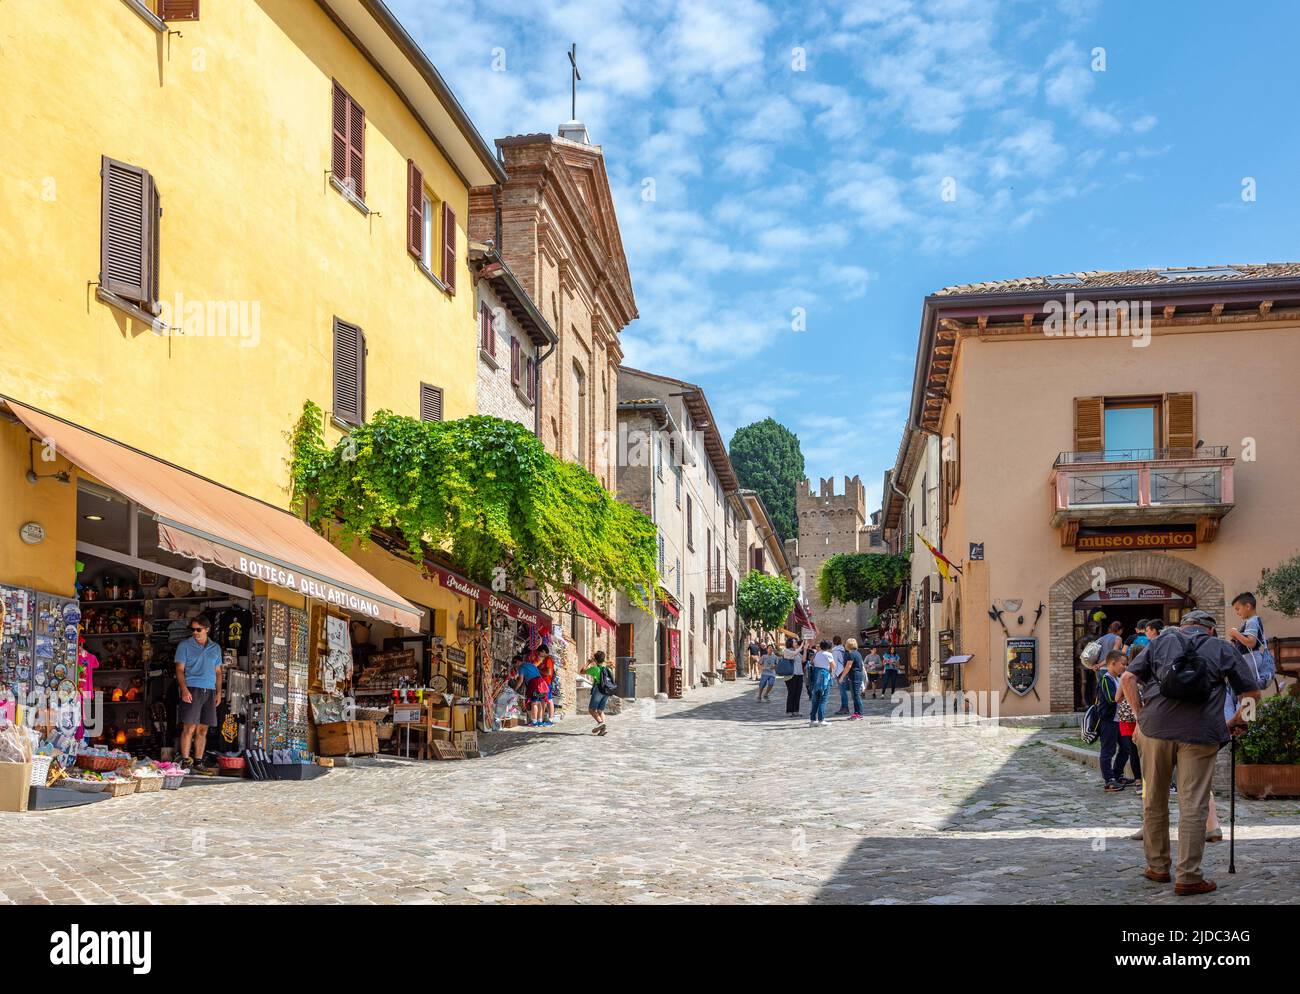 Gradara, Italia - 29 de mayo de 2018: Los turistas en la plaza principal del pueblo Foto de stock